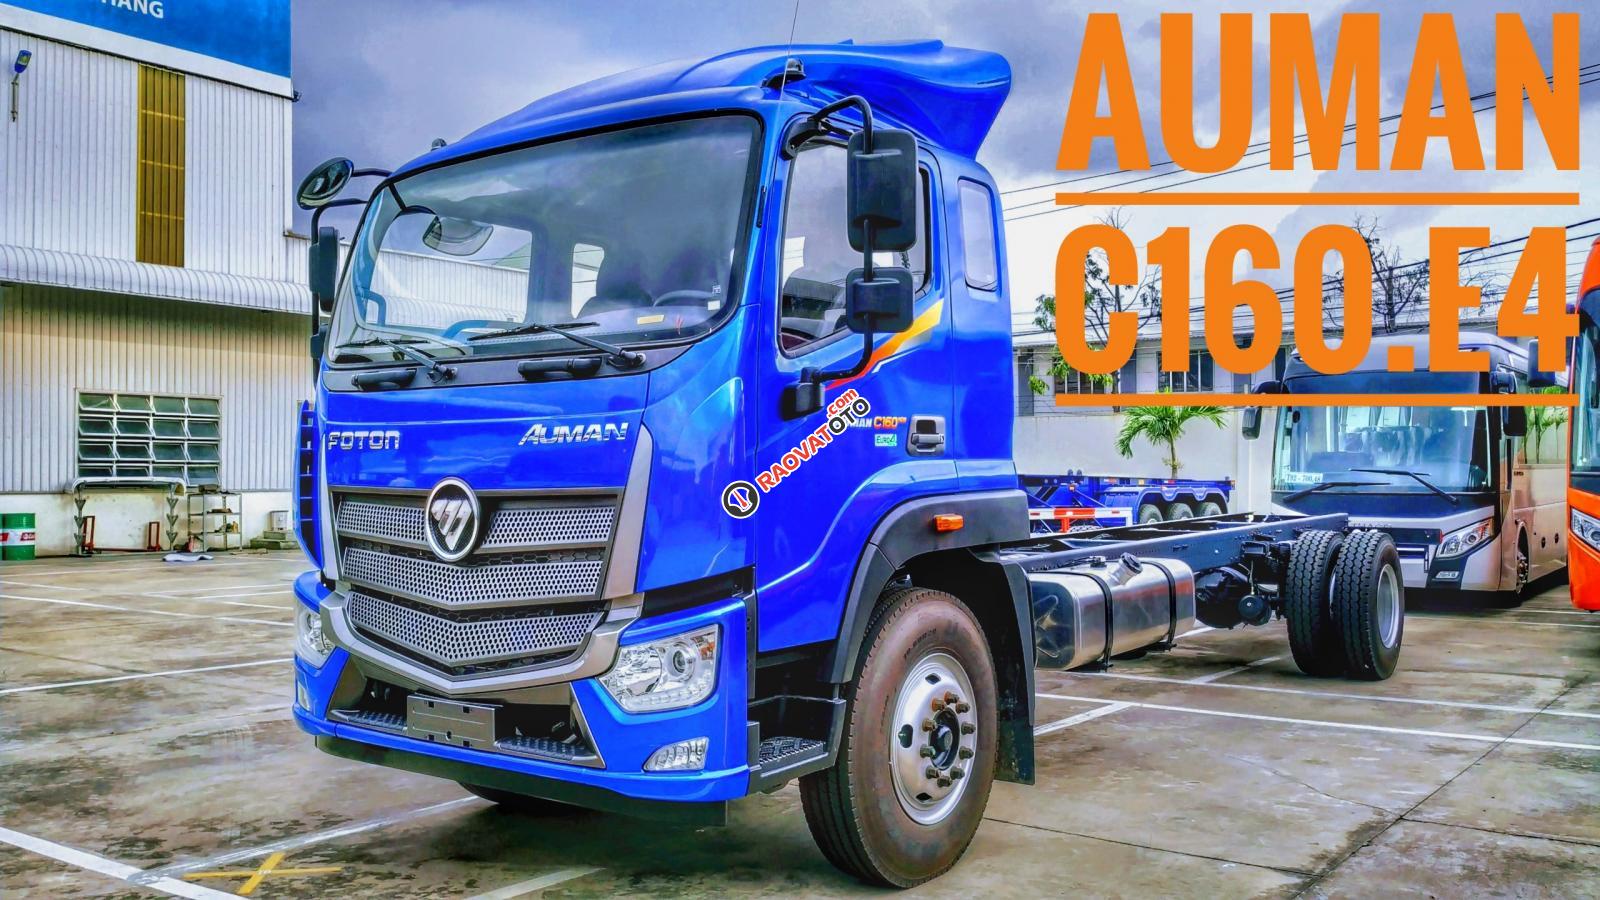 Bán xe tải 9 tấn - thùng dài 7M4 - Thaco Auman C160 NEW - 2019 - hỗ trợ trả góp-0